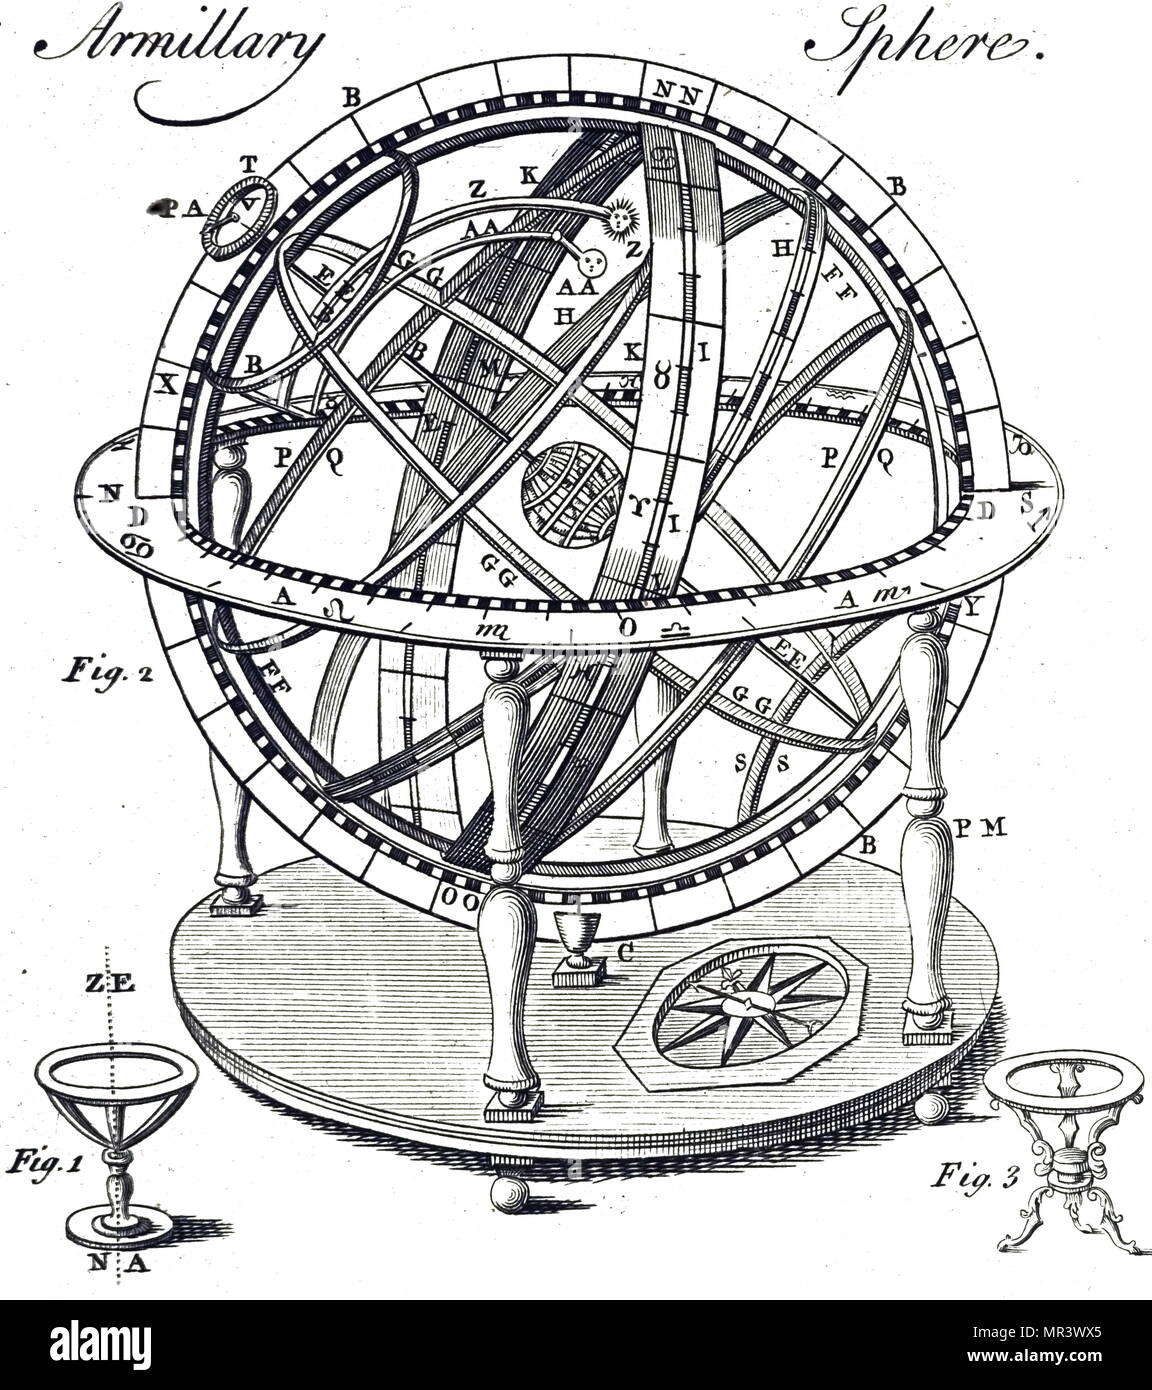 Gravure représentant une sphère armillaire. Une sphère armillaire est un modèle d'objets dans le ciel, composé d'un cadre sphérique de sonneries, centré sur la terre ou le Soleil, qui représentent les lignes de longitude et latitude céleste. En date du 18e siècle Banque D'Images